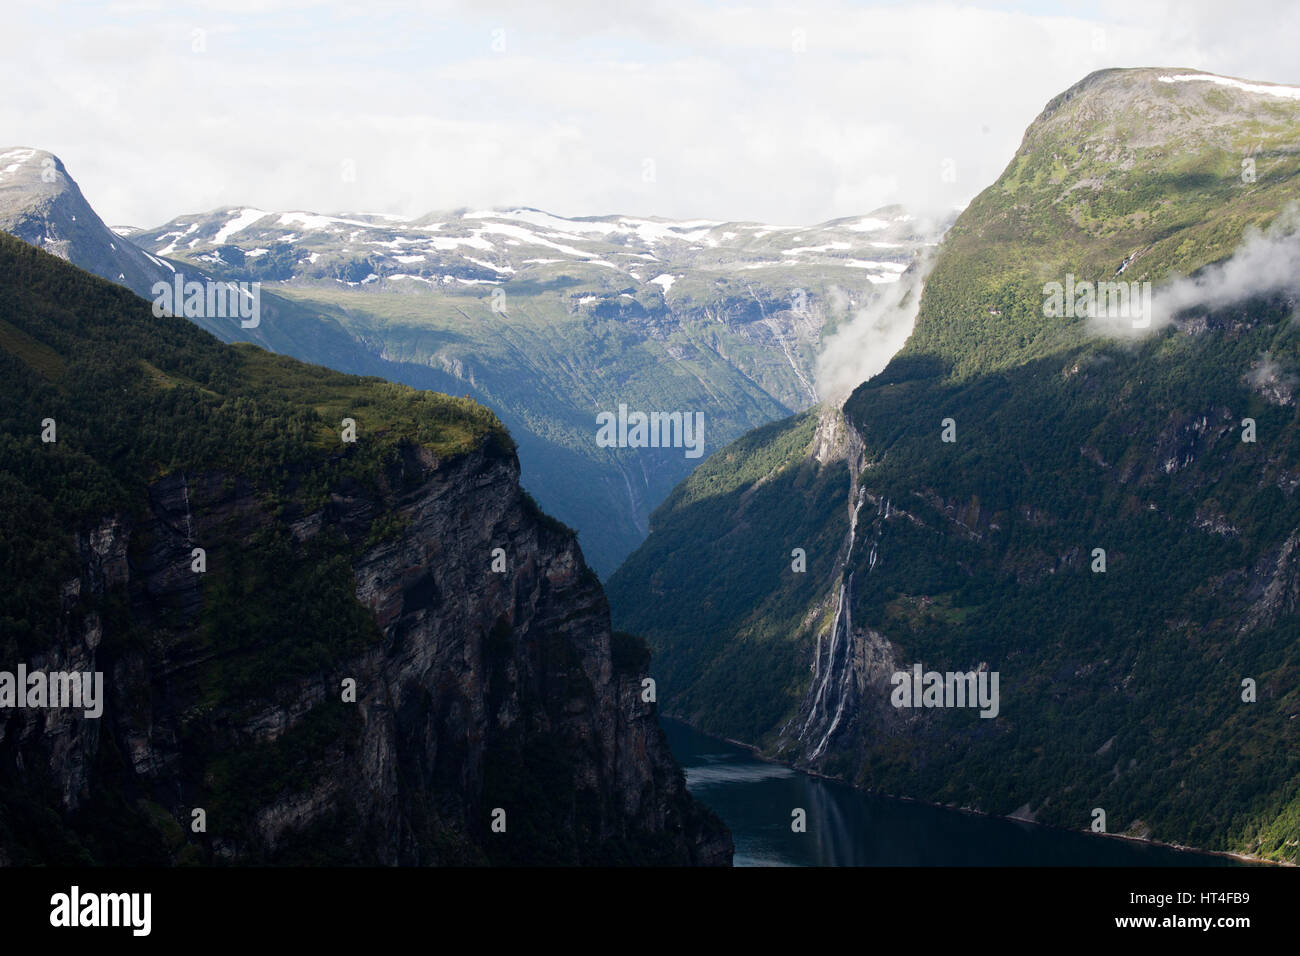 Le spettacolari zone dei fiordi in Norvegia offre attività quali escursioni, ghiacciaio passeggiate, pesca e ciclismo. Foto Stock